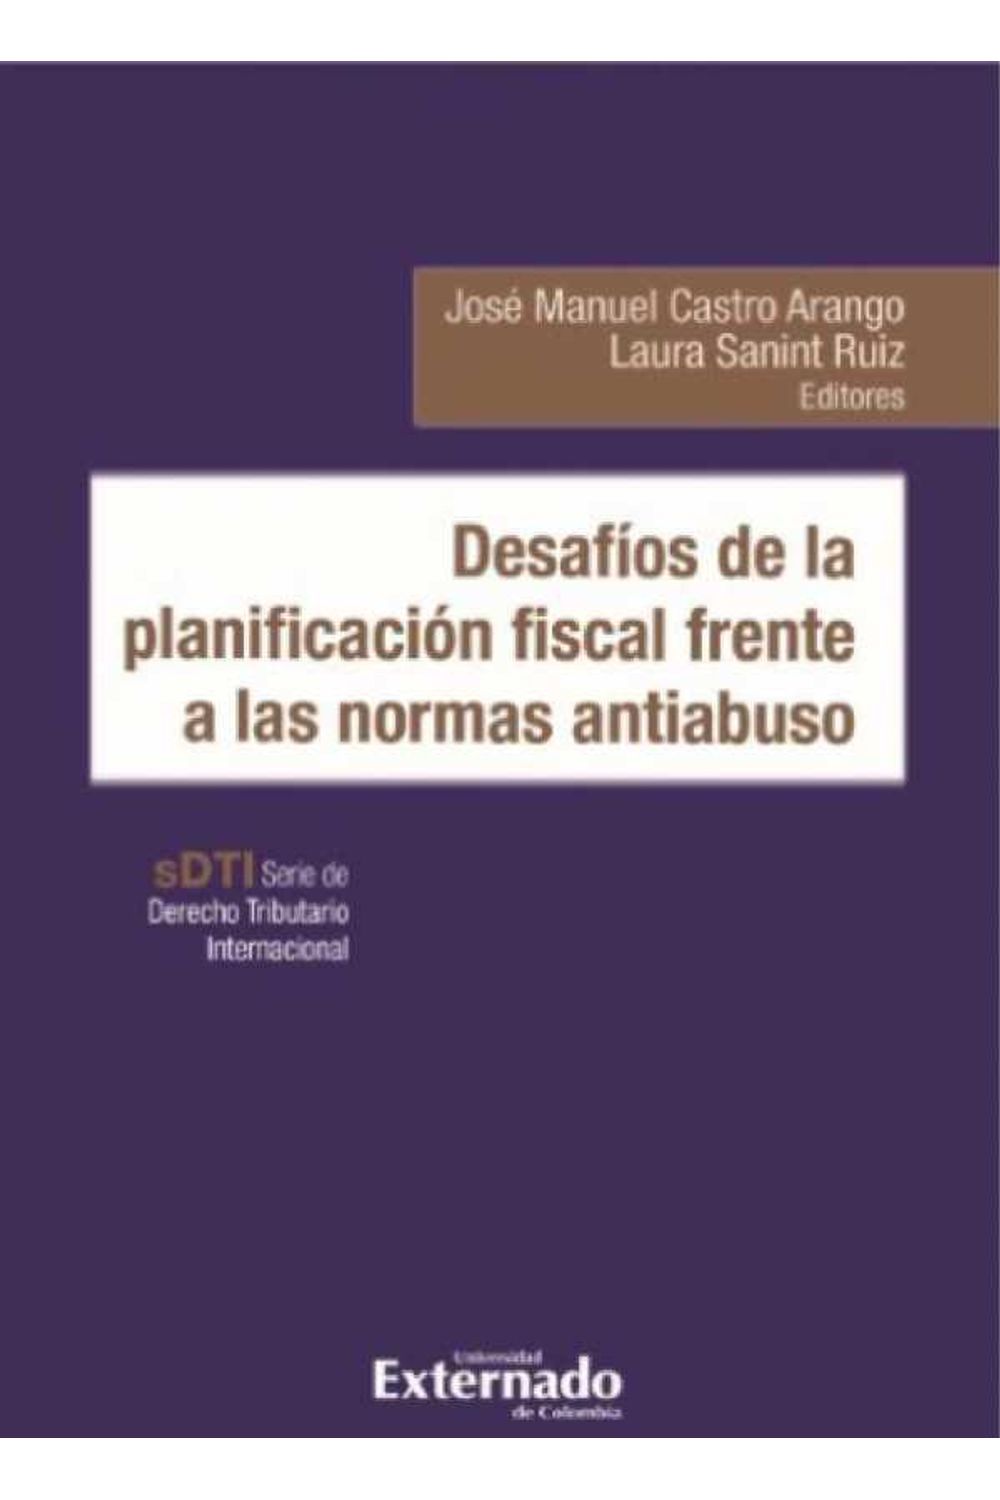 bw-desafiacuteos-de-la-planificacioacuten-fiscal-frente-a-las-normas-antiabuso-u-externado-de-colombia-9789587905441